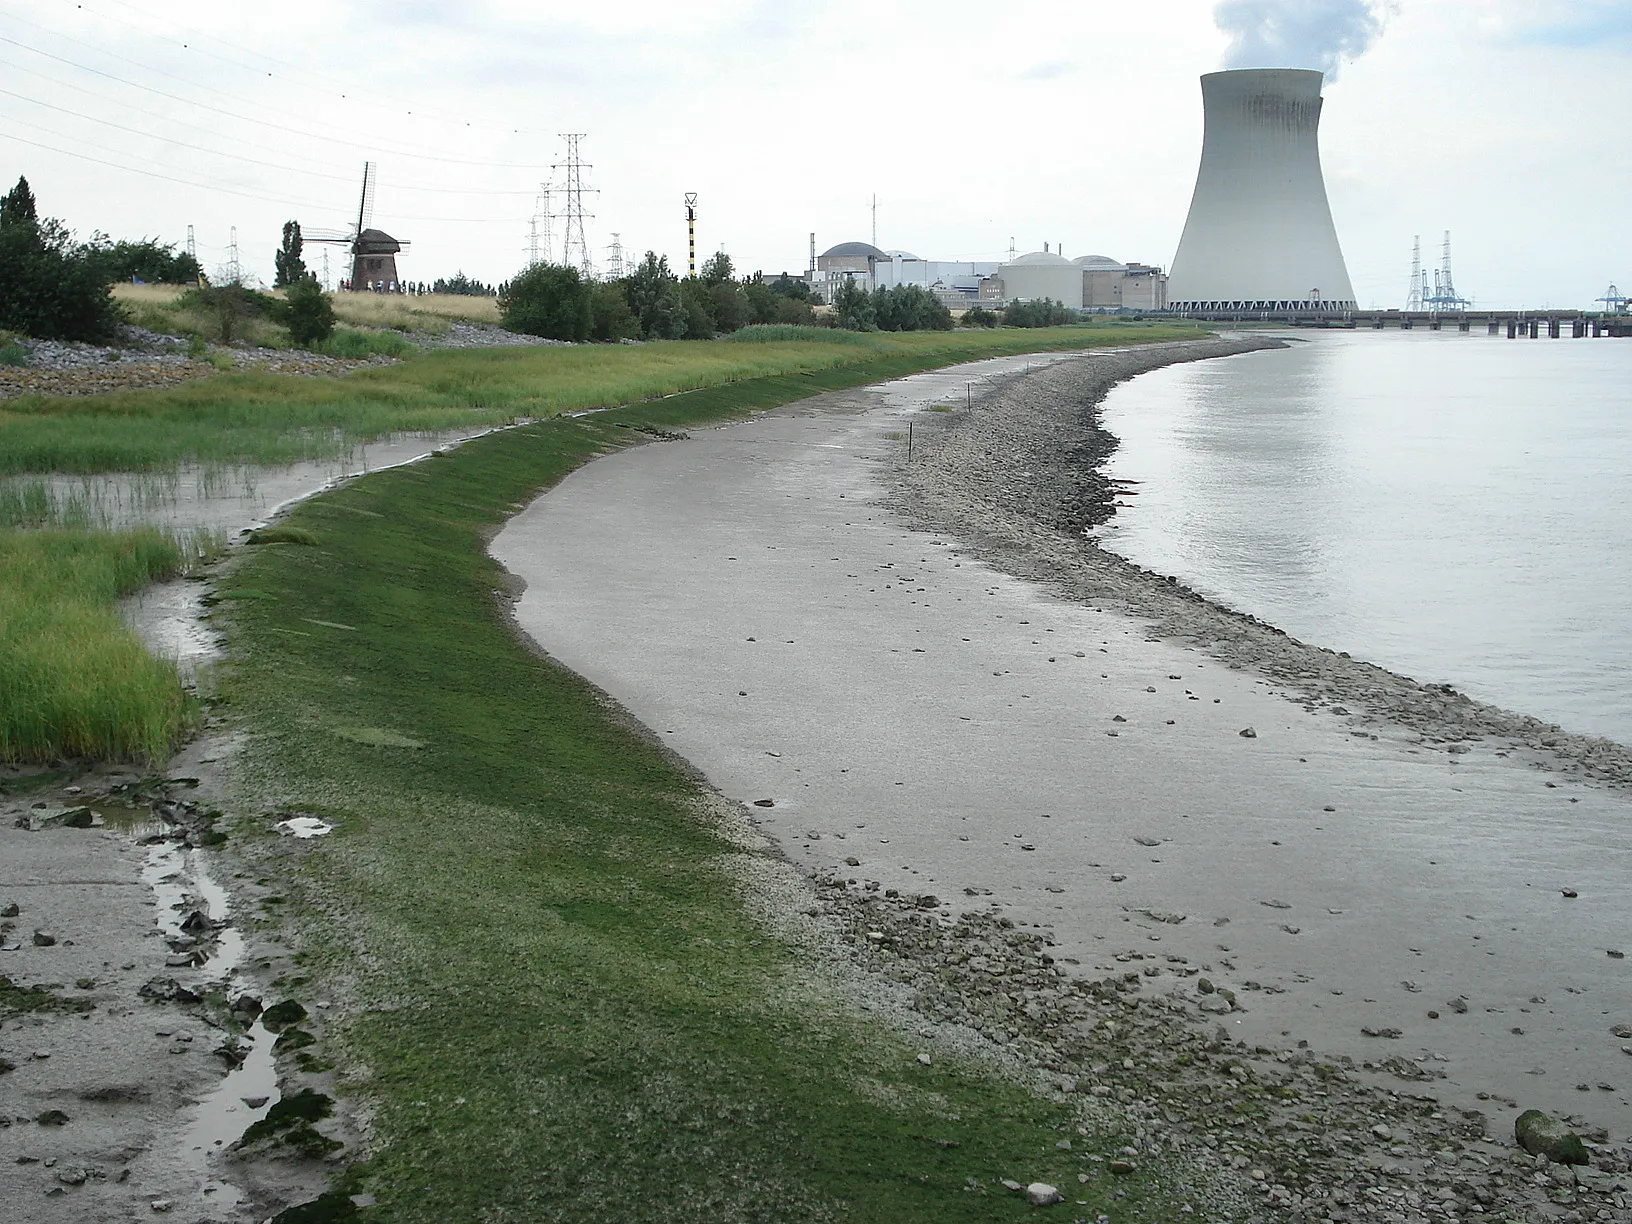 Photo showing: Doel (Belgique), berge de l'Escaut avec vieux moulin et centrale nucléaire.

Doel: Scheldedijk met slikken. Oude molen en koeltorens kerncentrale. Vanop veer Doel-Lillo.